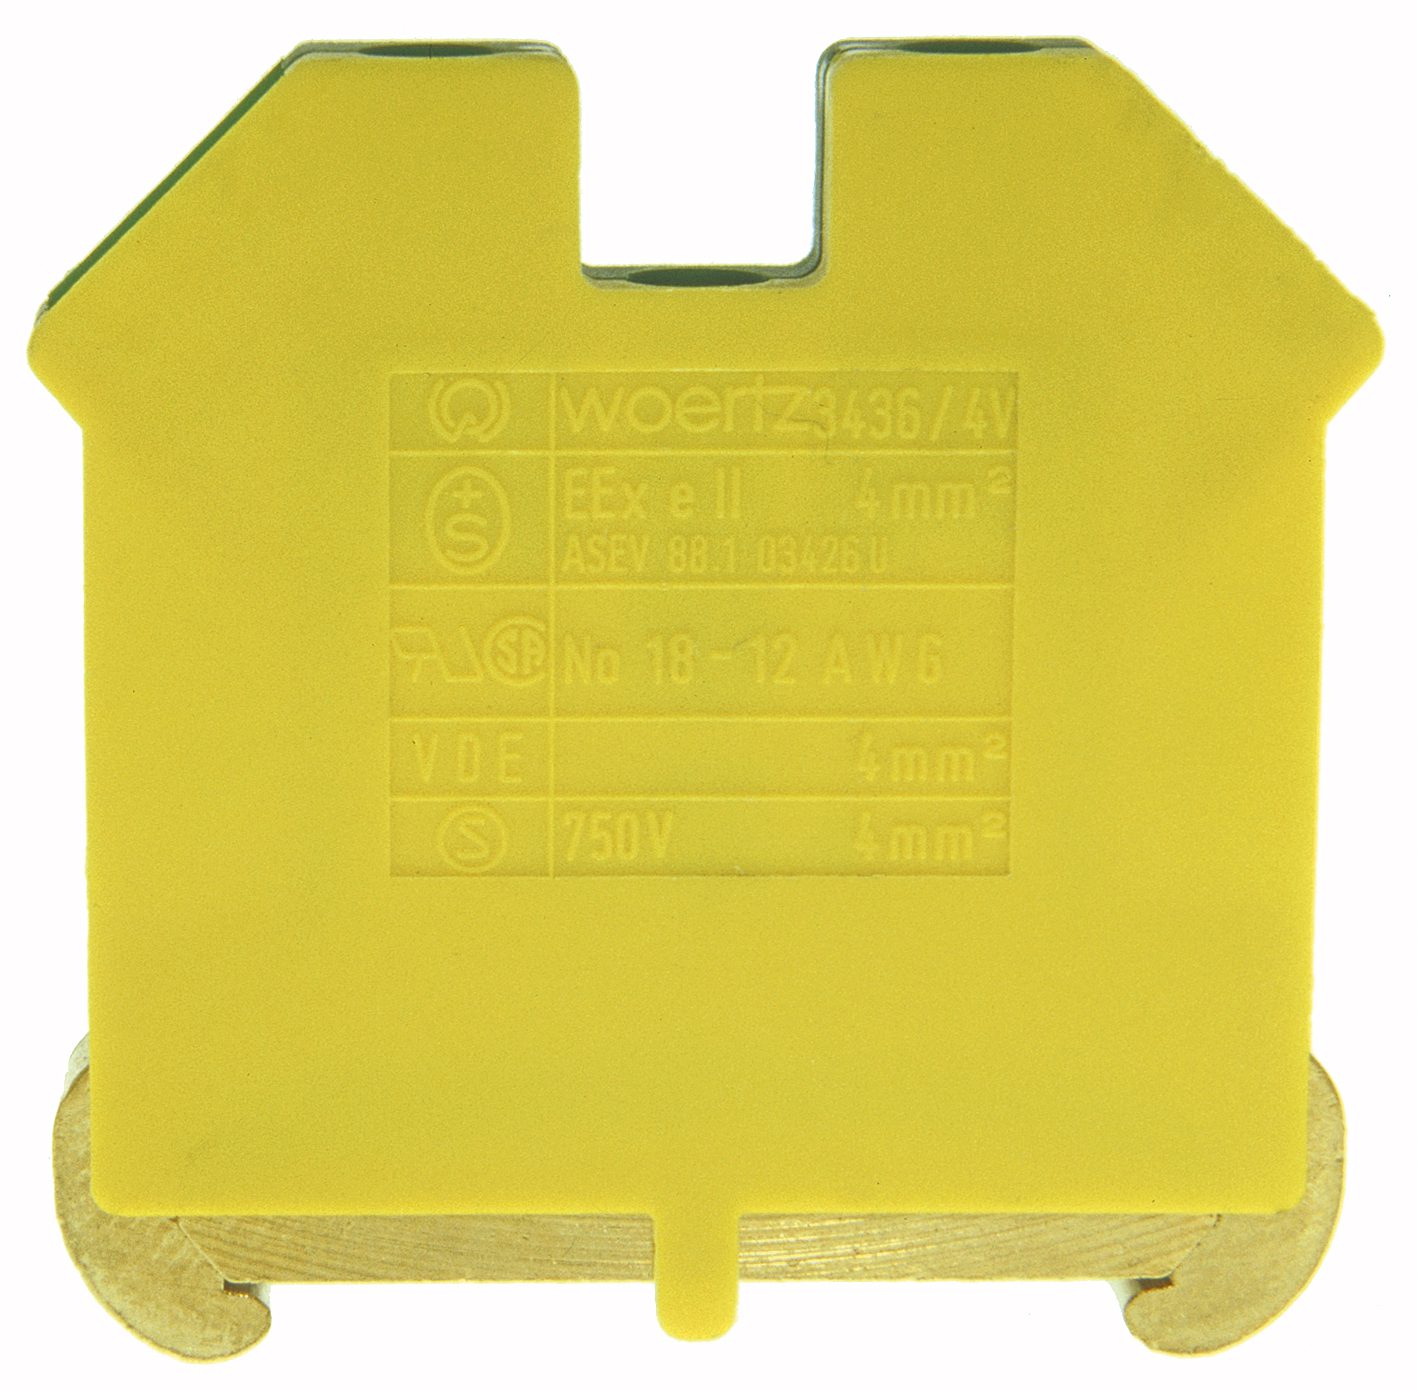 Schutzleiterklemme DIN35 4mm² grün/gelb